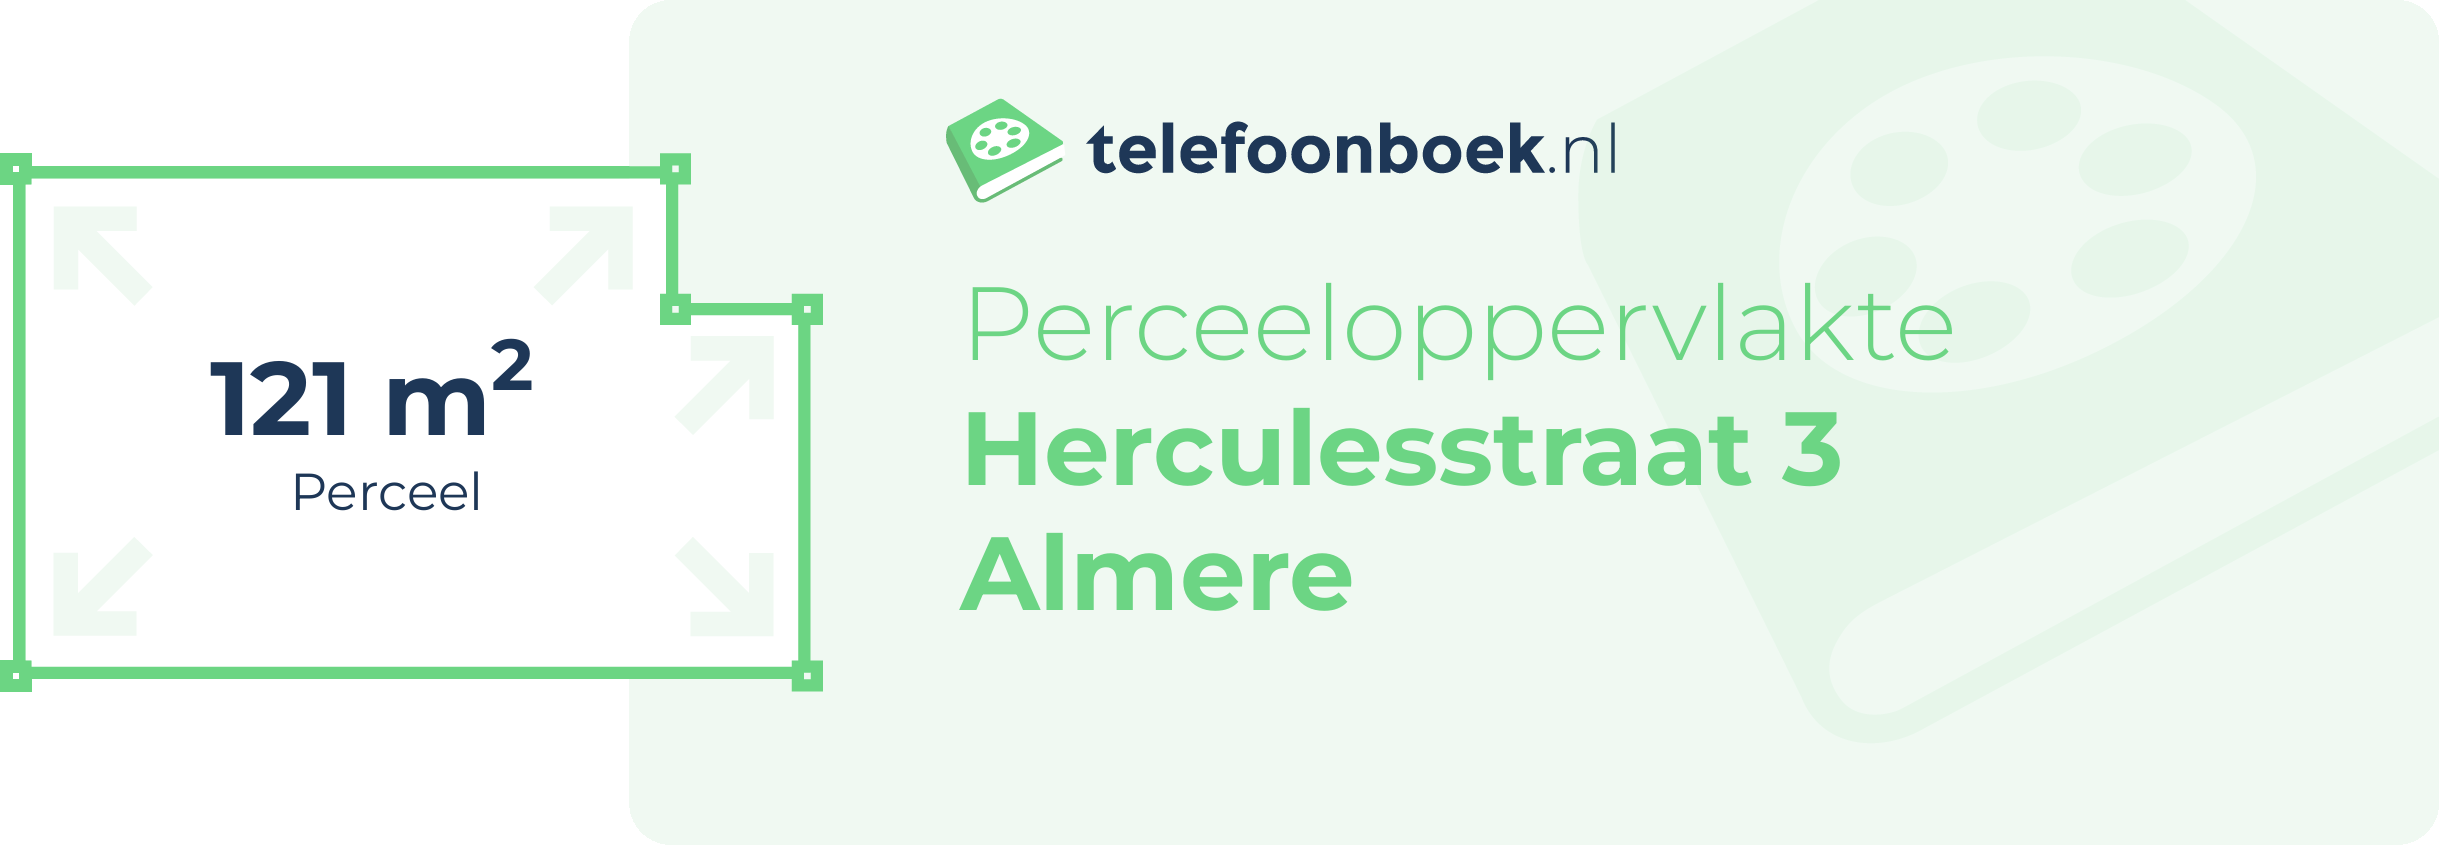 Perceeloppervlakte Herculesstraat 3 Almere